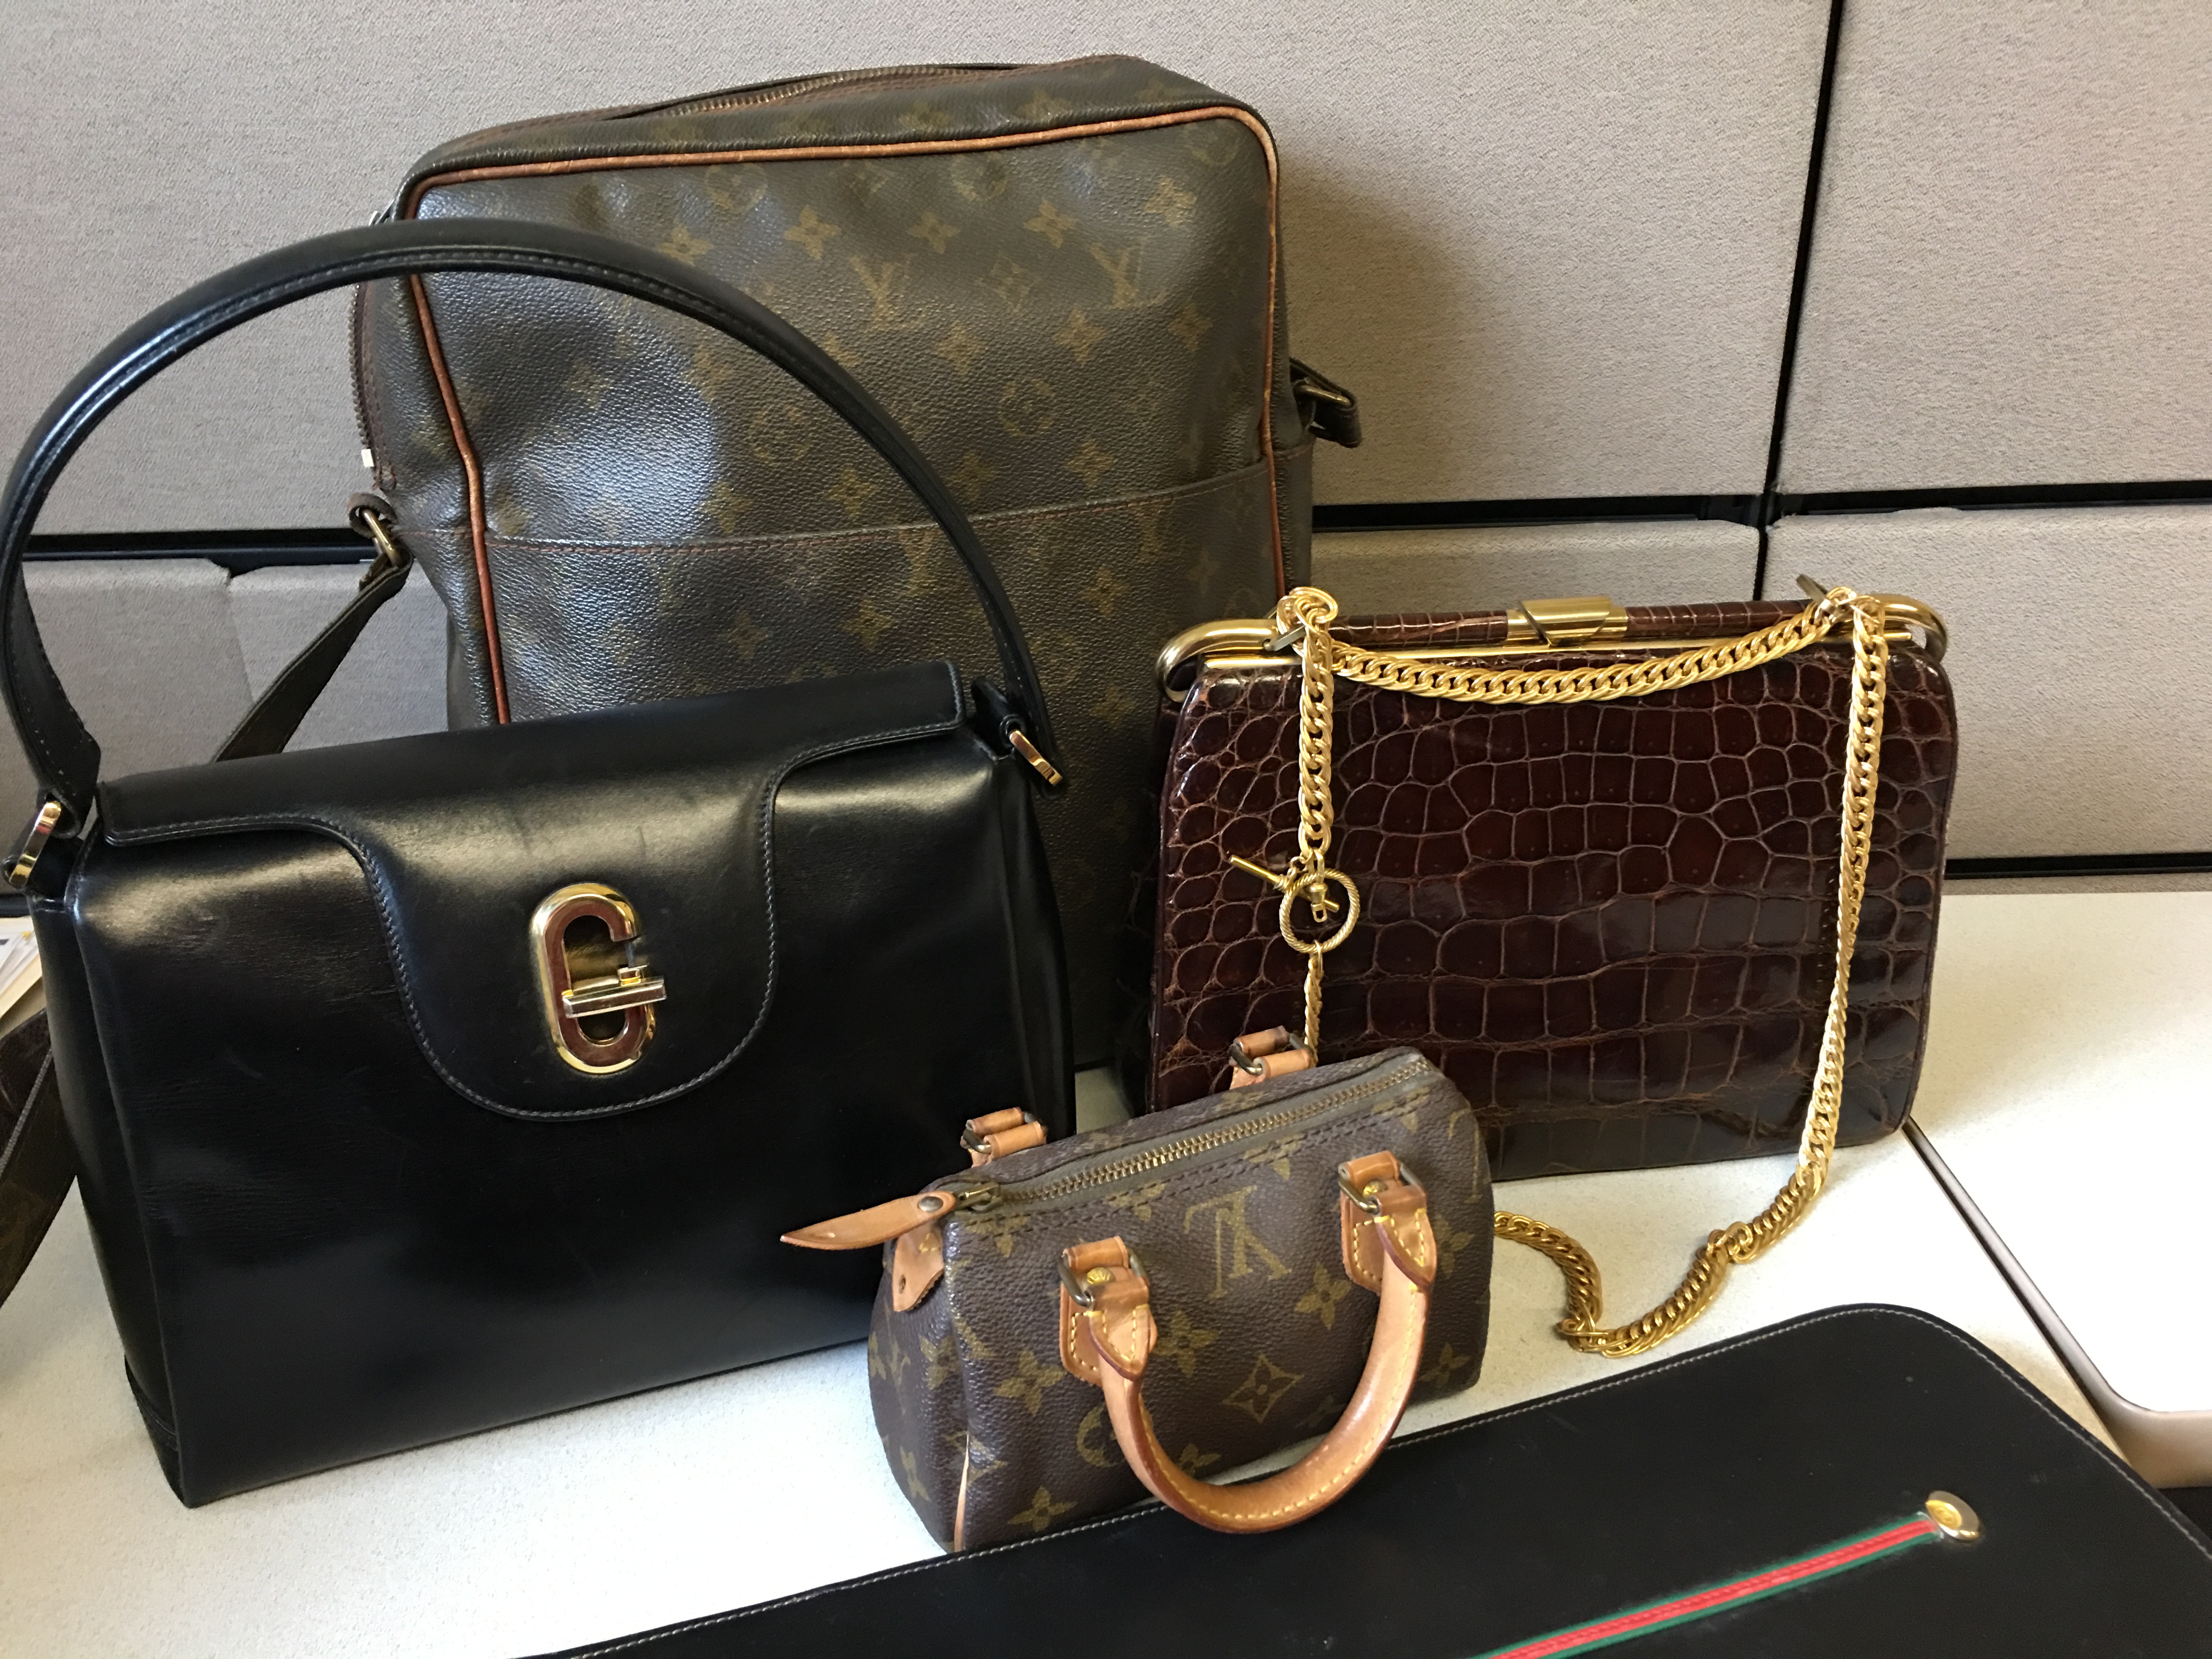 Finds” vintage purses Louis Vuitton, Cartier, Gucci, Prada